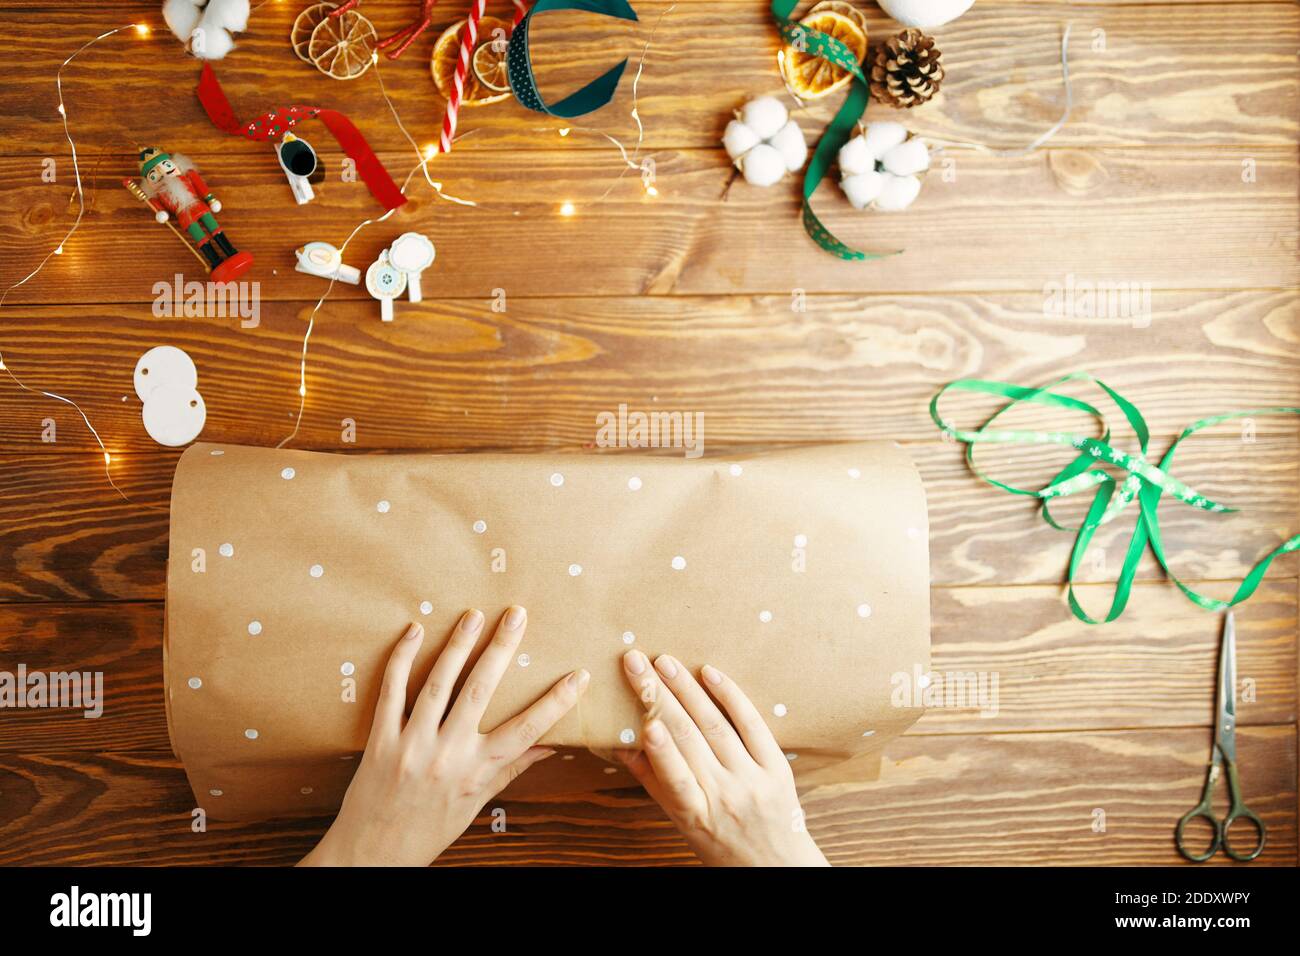 Draufsicht der Frauen Hände Verpackung Weihnachtsgeschenk auf Holztisch. Geschenkpapier mit weißen Punkten. Bänder Baumwolle Boxen trocken Orangen Girlande und Neujahr Spielzeug auf Hintergrund. Stockfoto